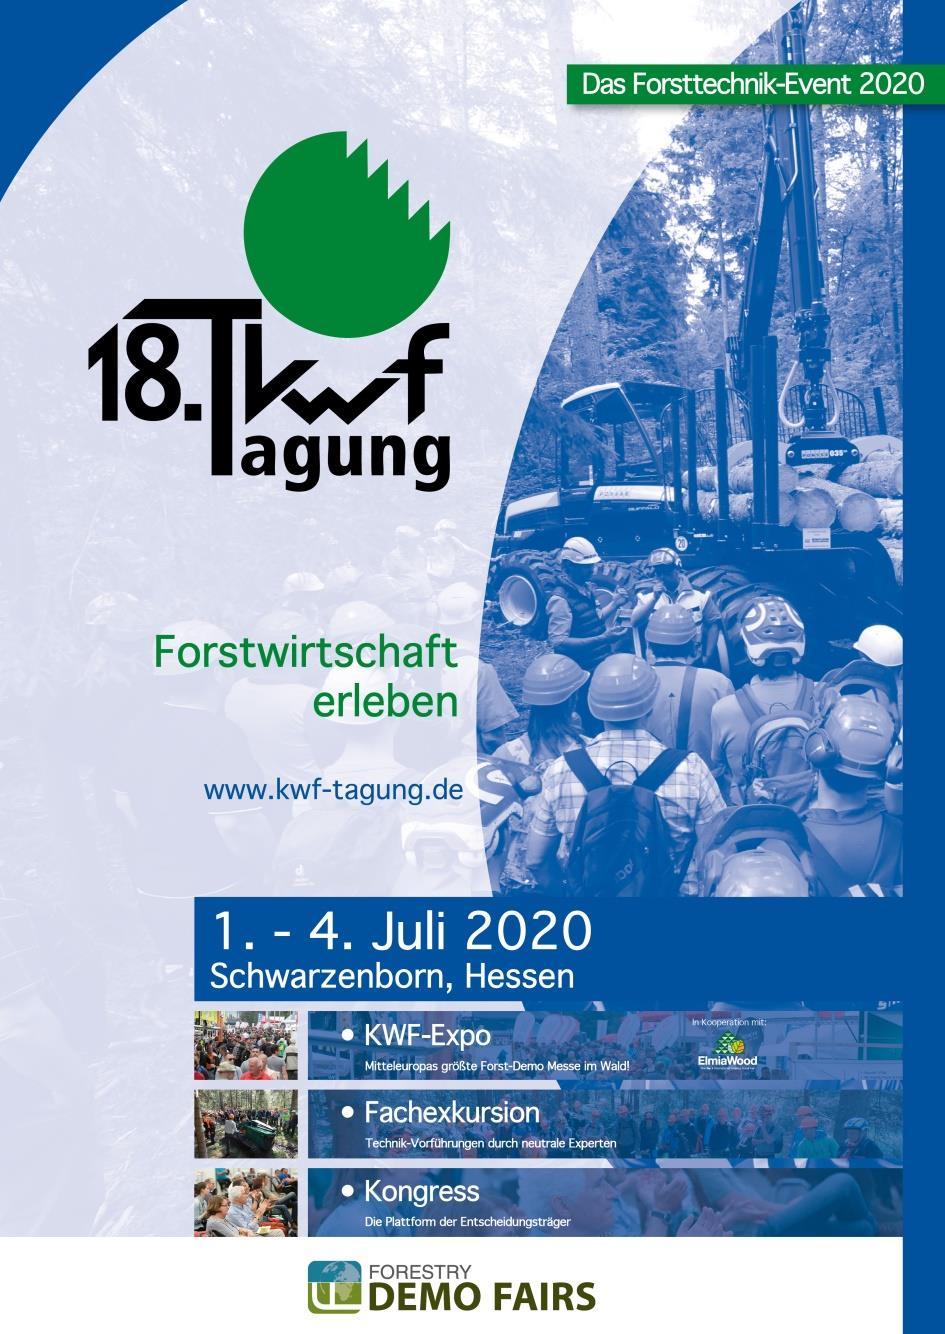 Arbeitsverfahren FSC zu KWF-EXPO Weltgrößte Forst-Demo-Messe und Branchentreff 2020!